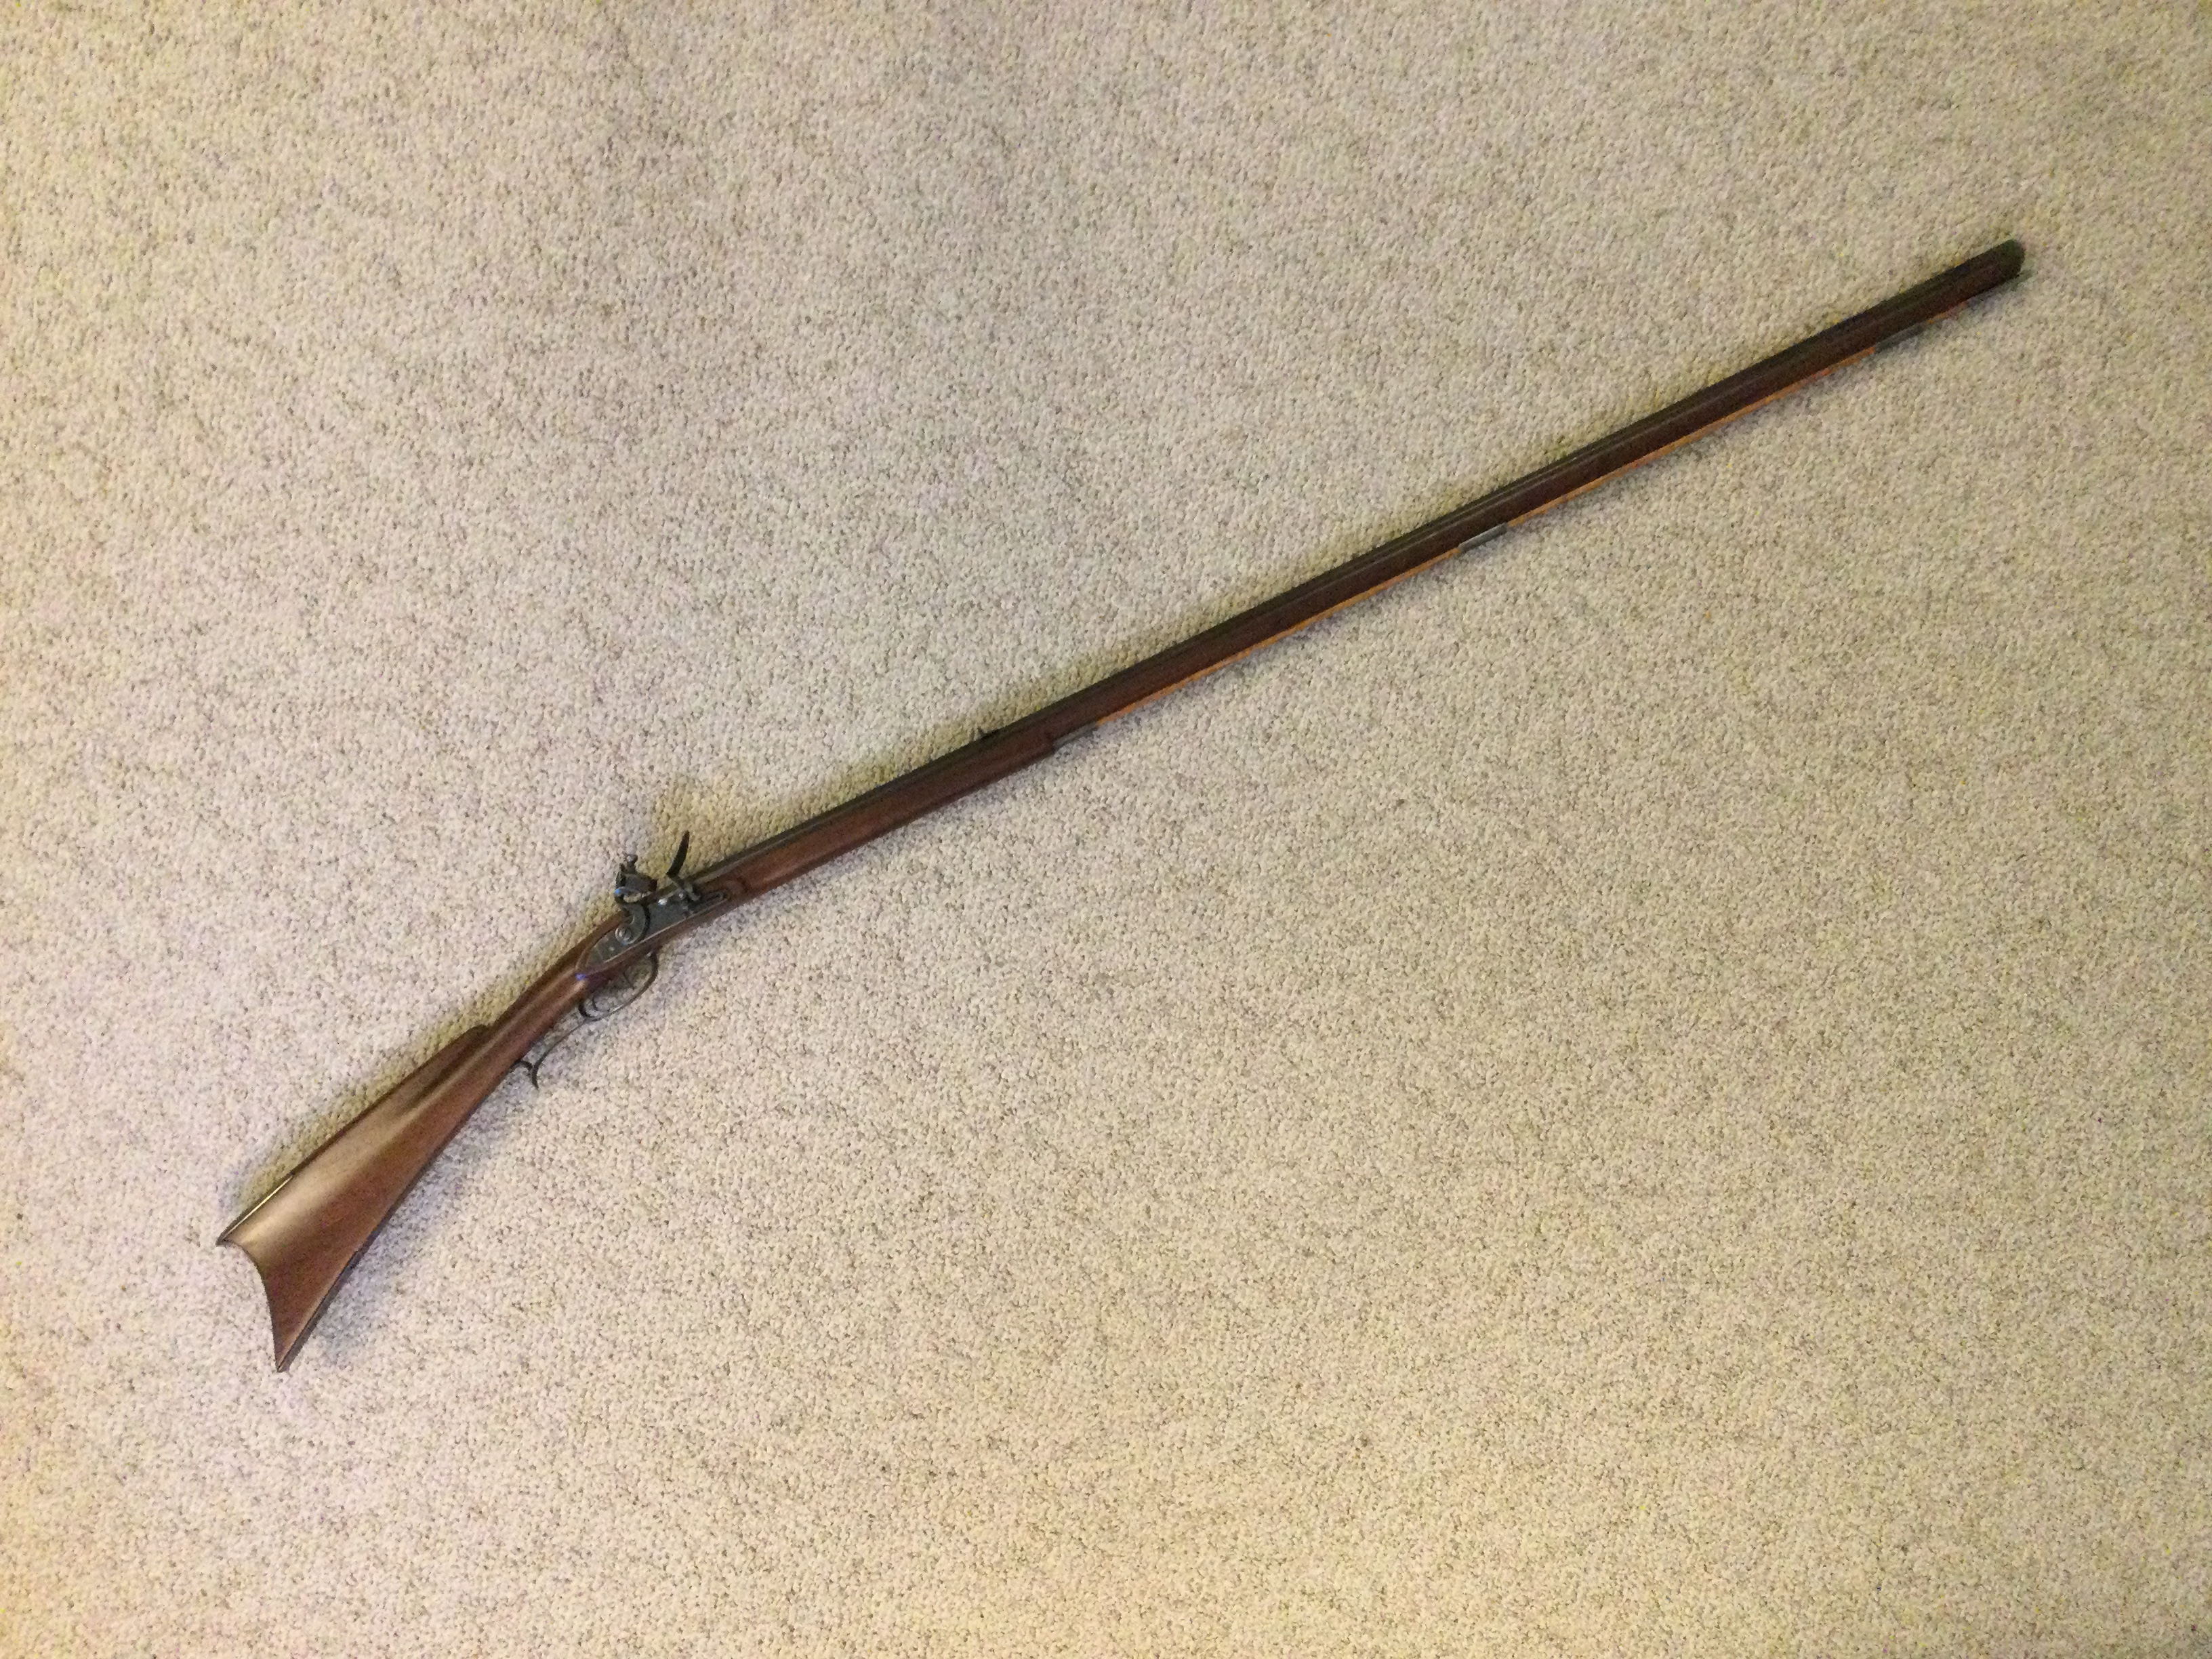 Southern Mountain Rifle .45 cal kit by Kibler